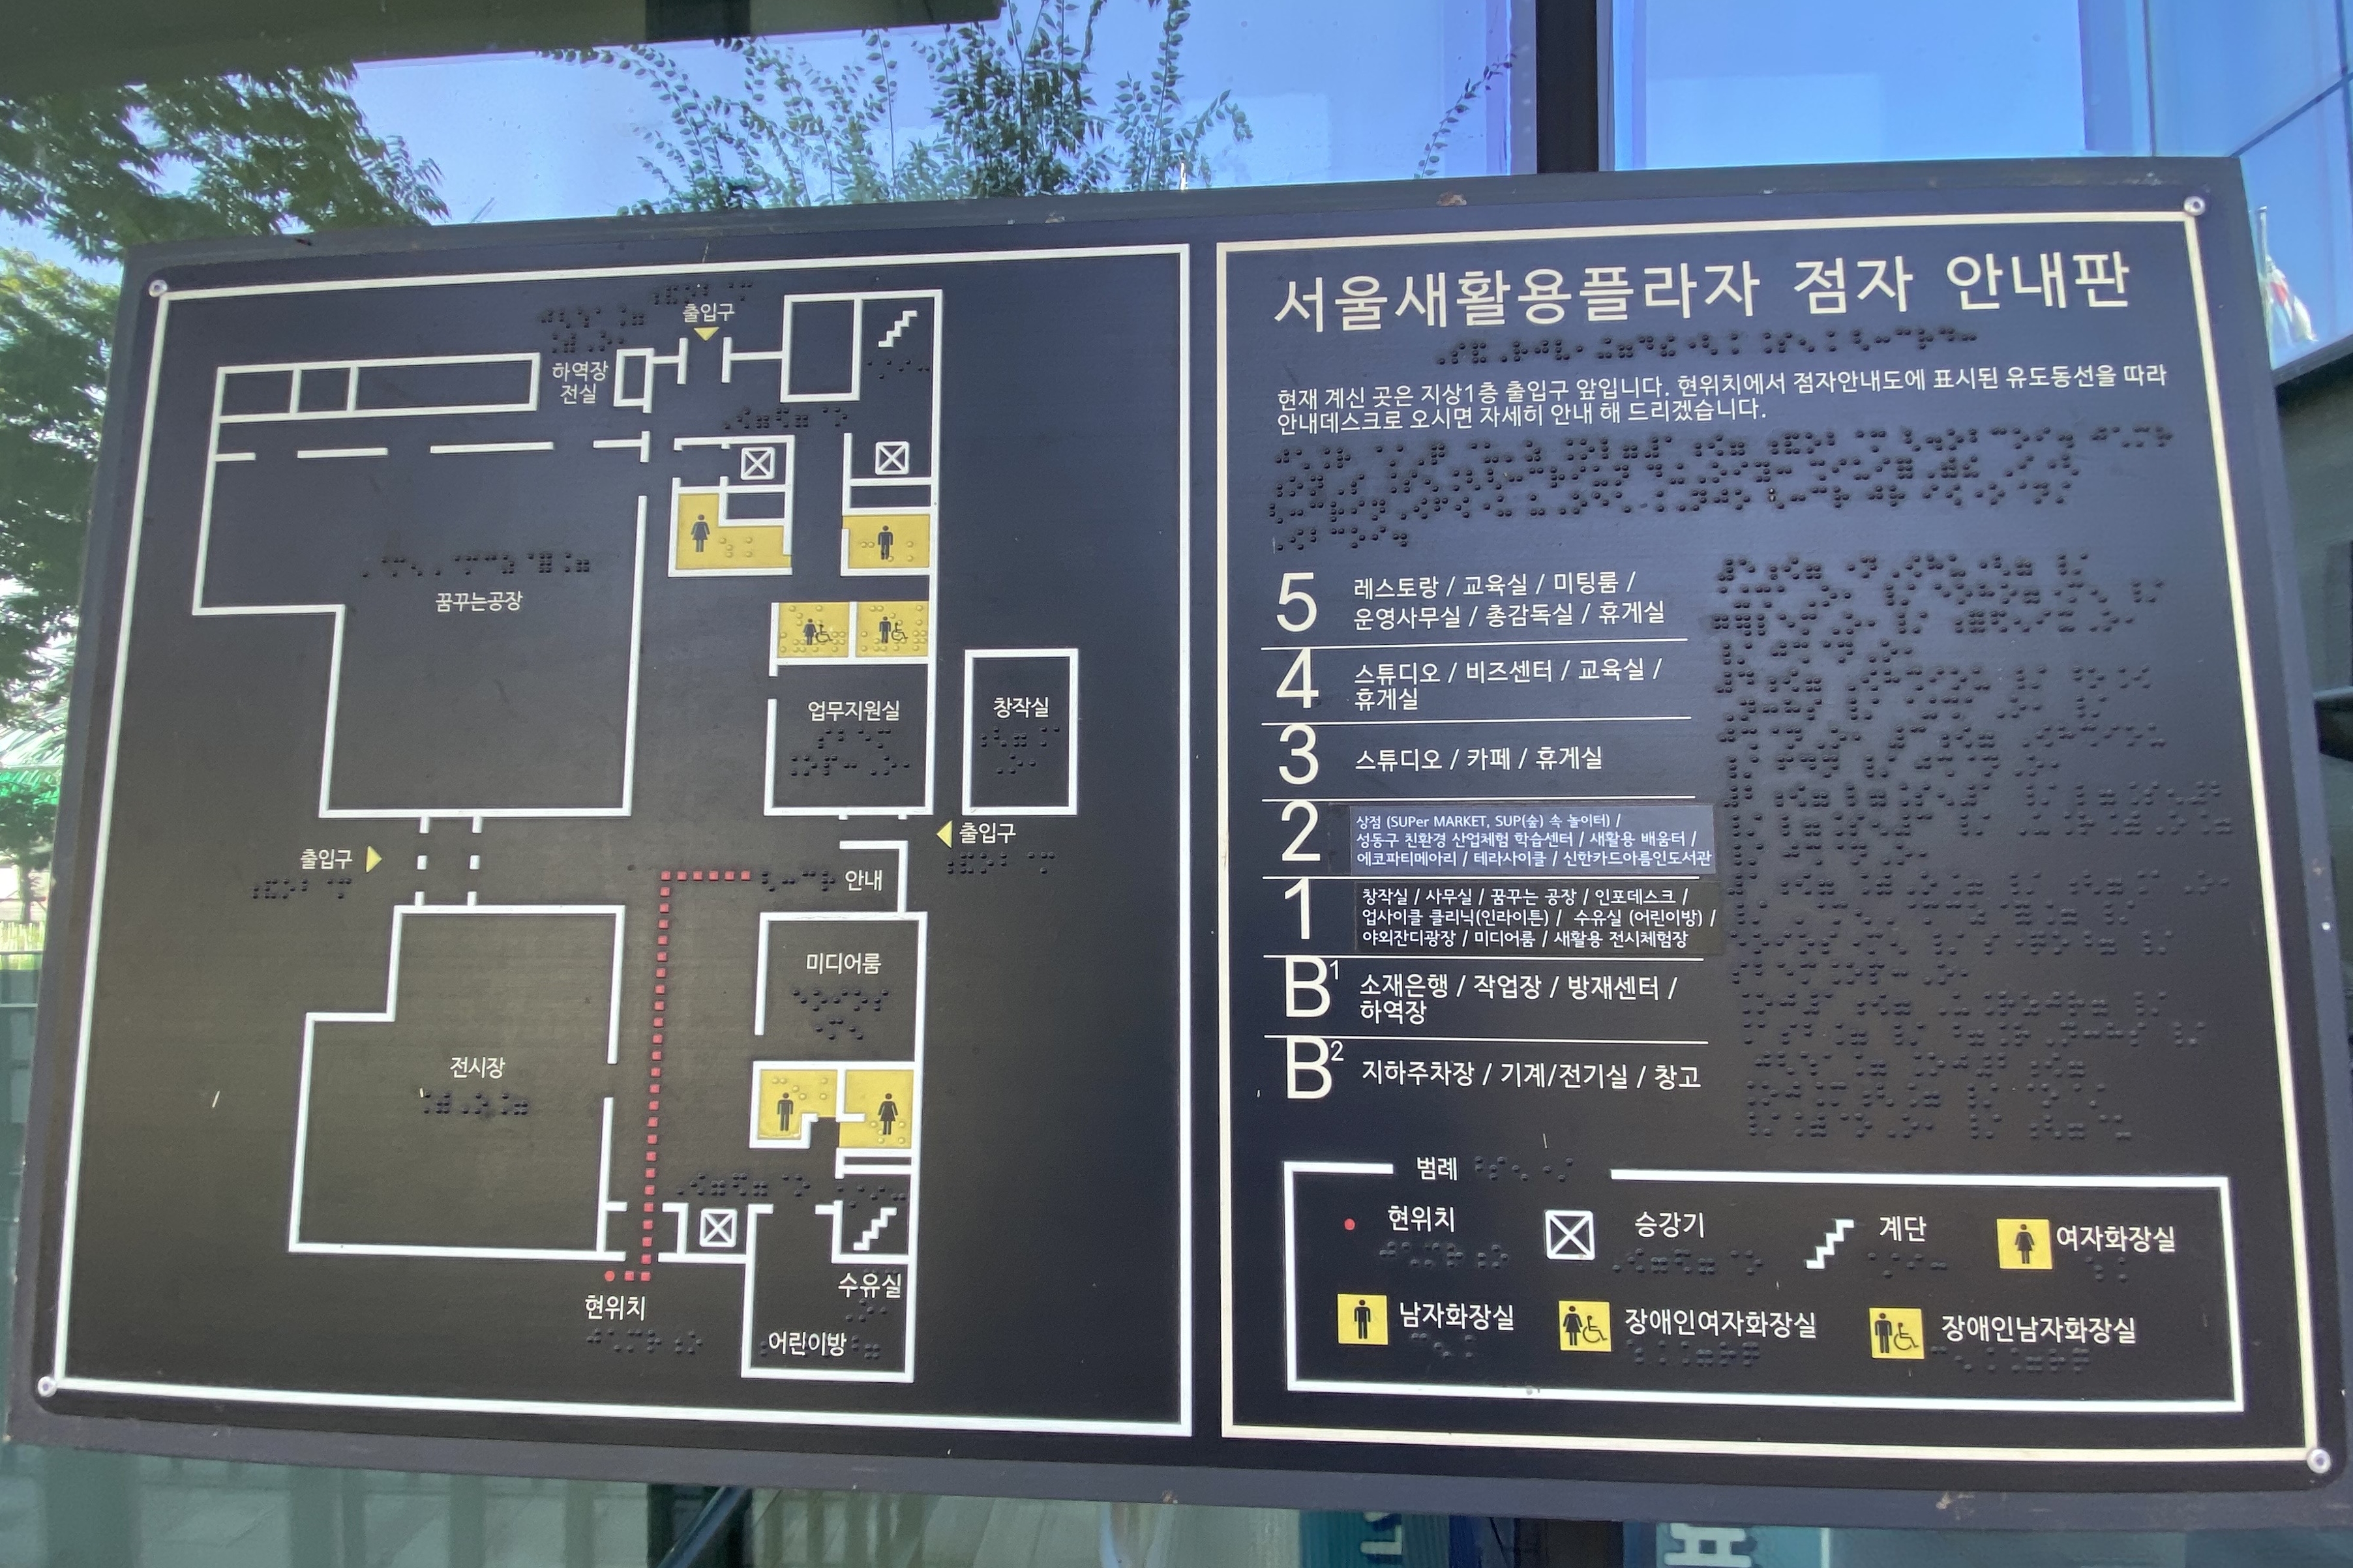 안내데스크/안내판0 : 지상 1층 주줄입구에 설치되어 있는 서울새활용플라자 점자안내판2